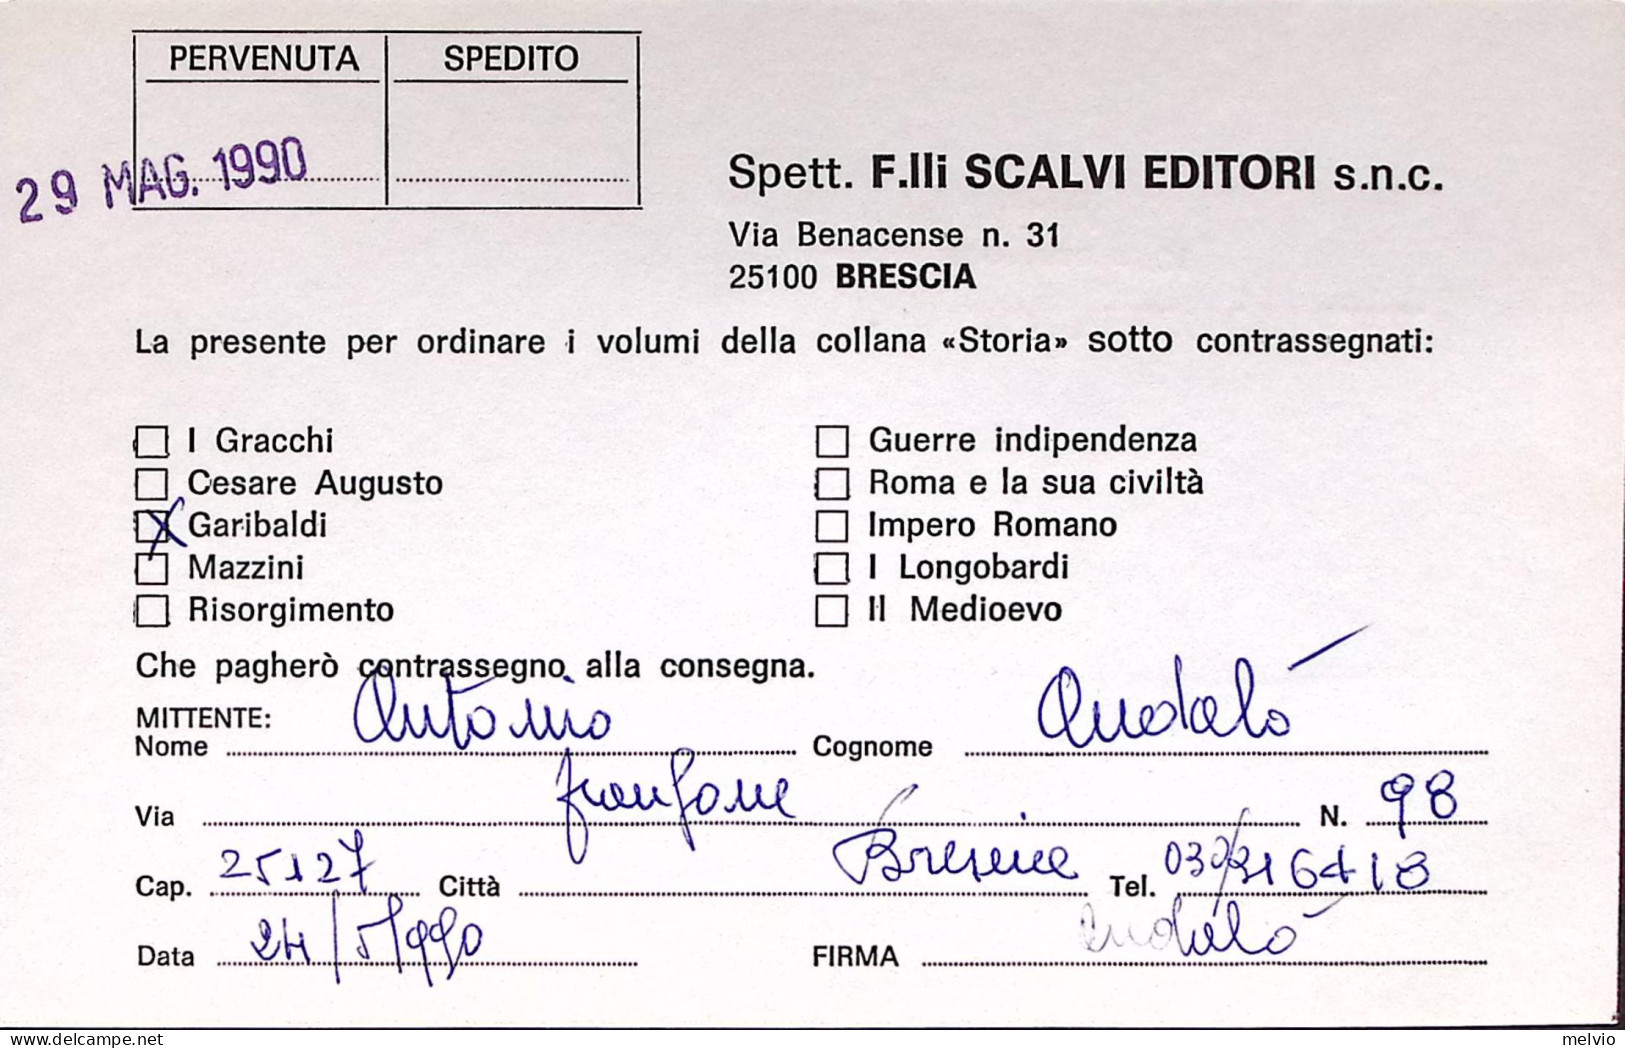 1990-MONDIALI CALCIO Lire 450 Cecoslovacchia Su Cedola Commissione Libraria Bres - 1981-90: Marcophilia